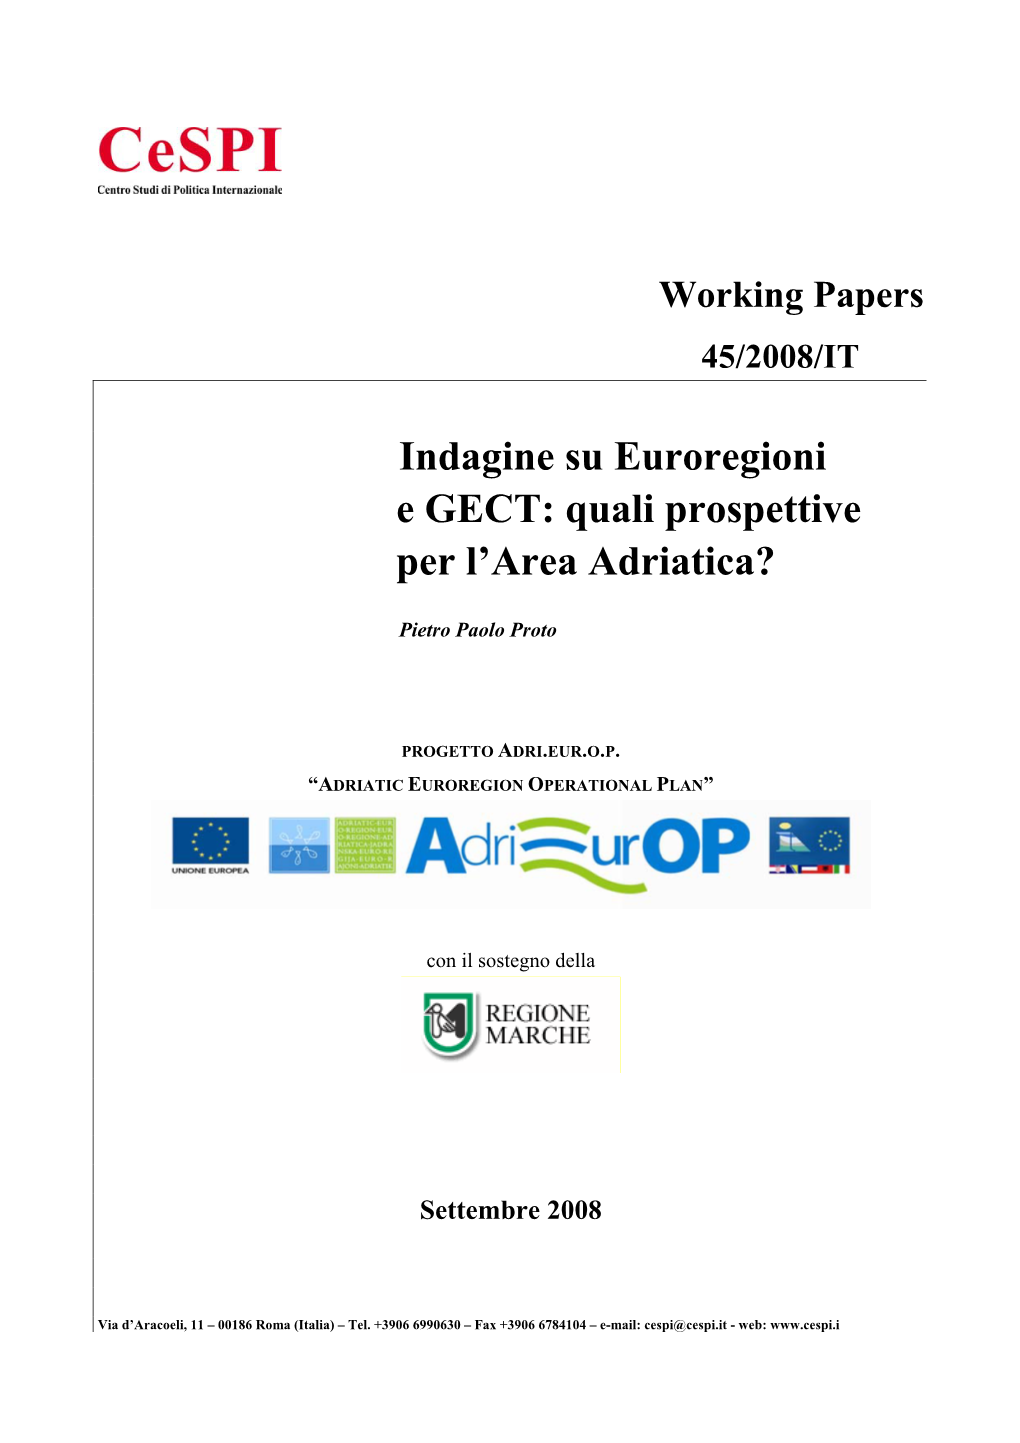 Indagine Su Euroregioni E GECT: Quali Prospettive Per L'area Adriatica?